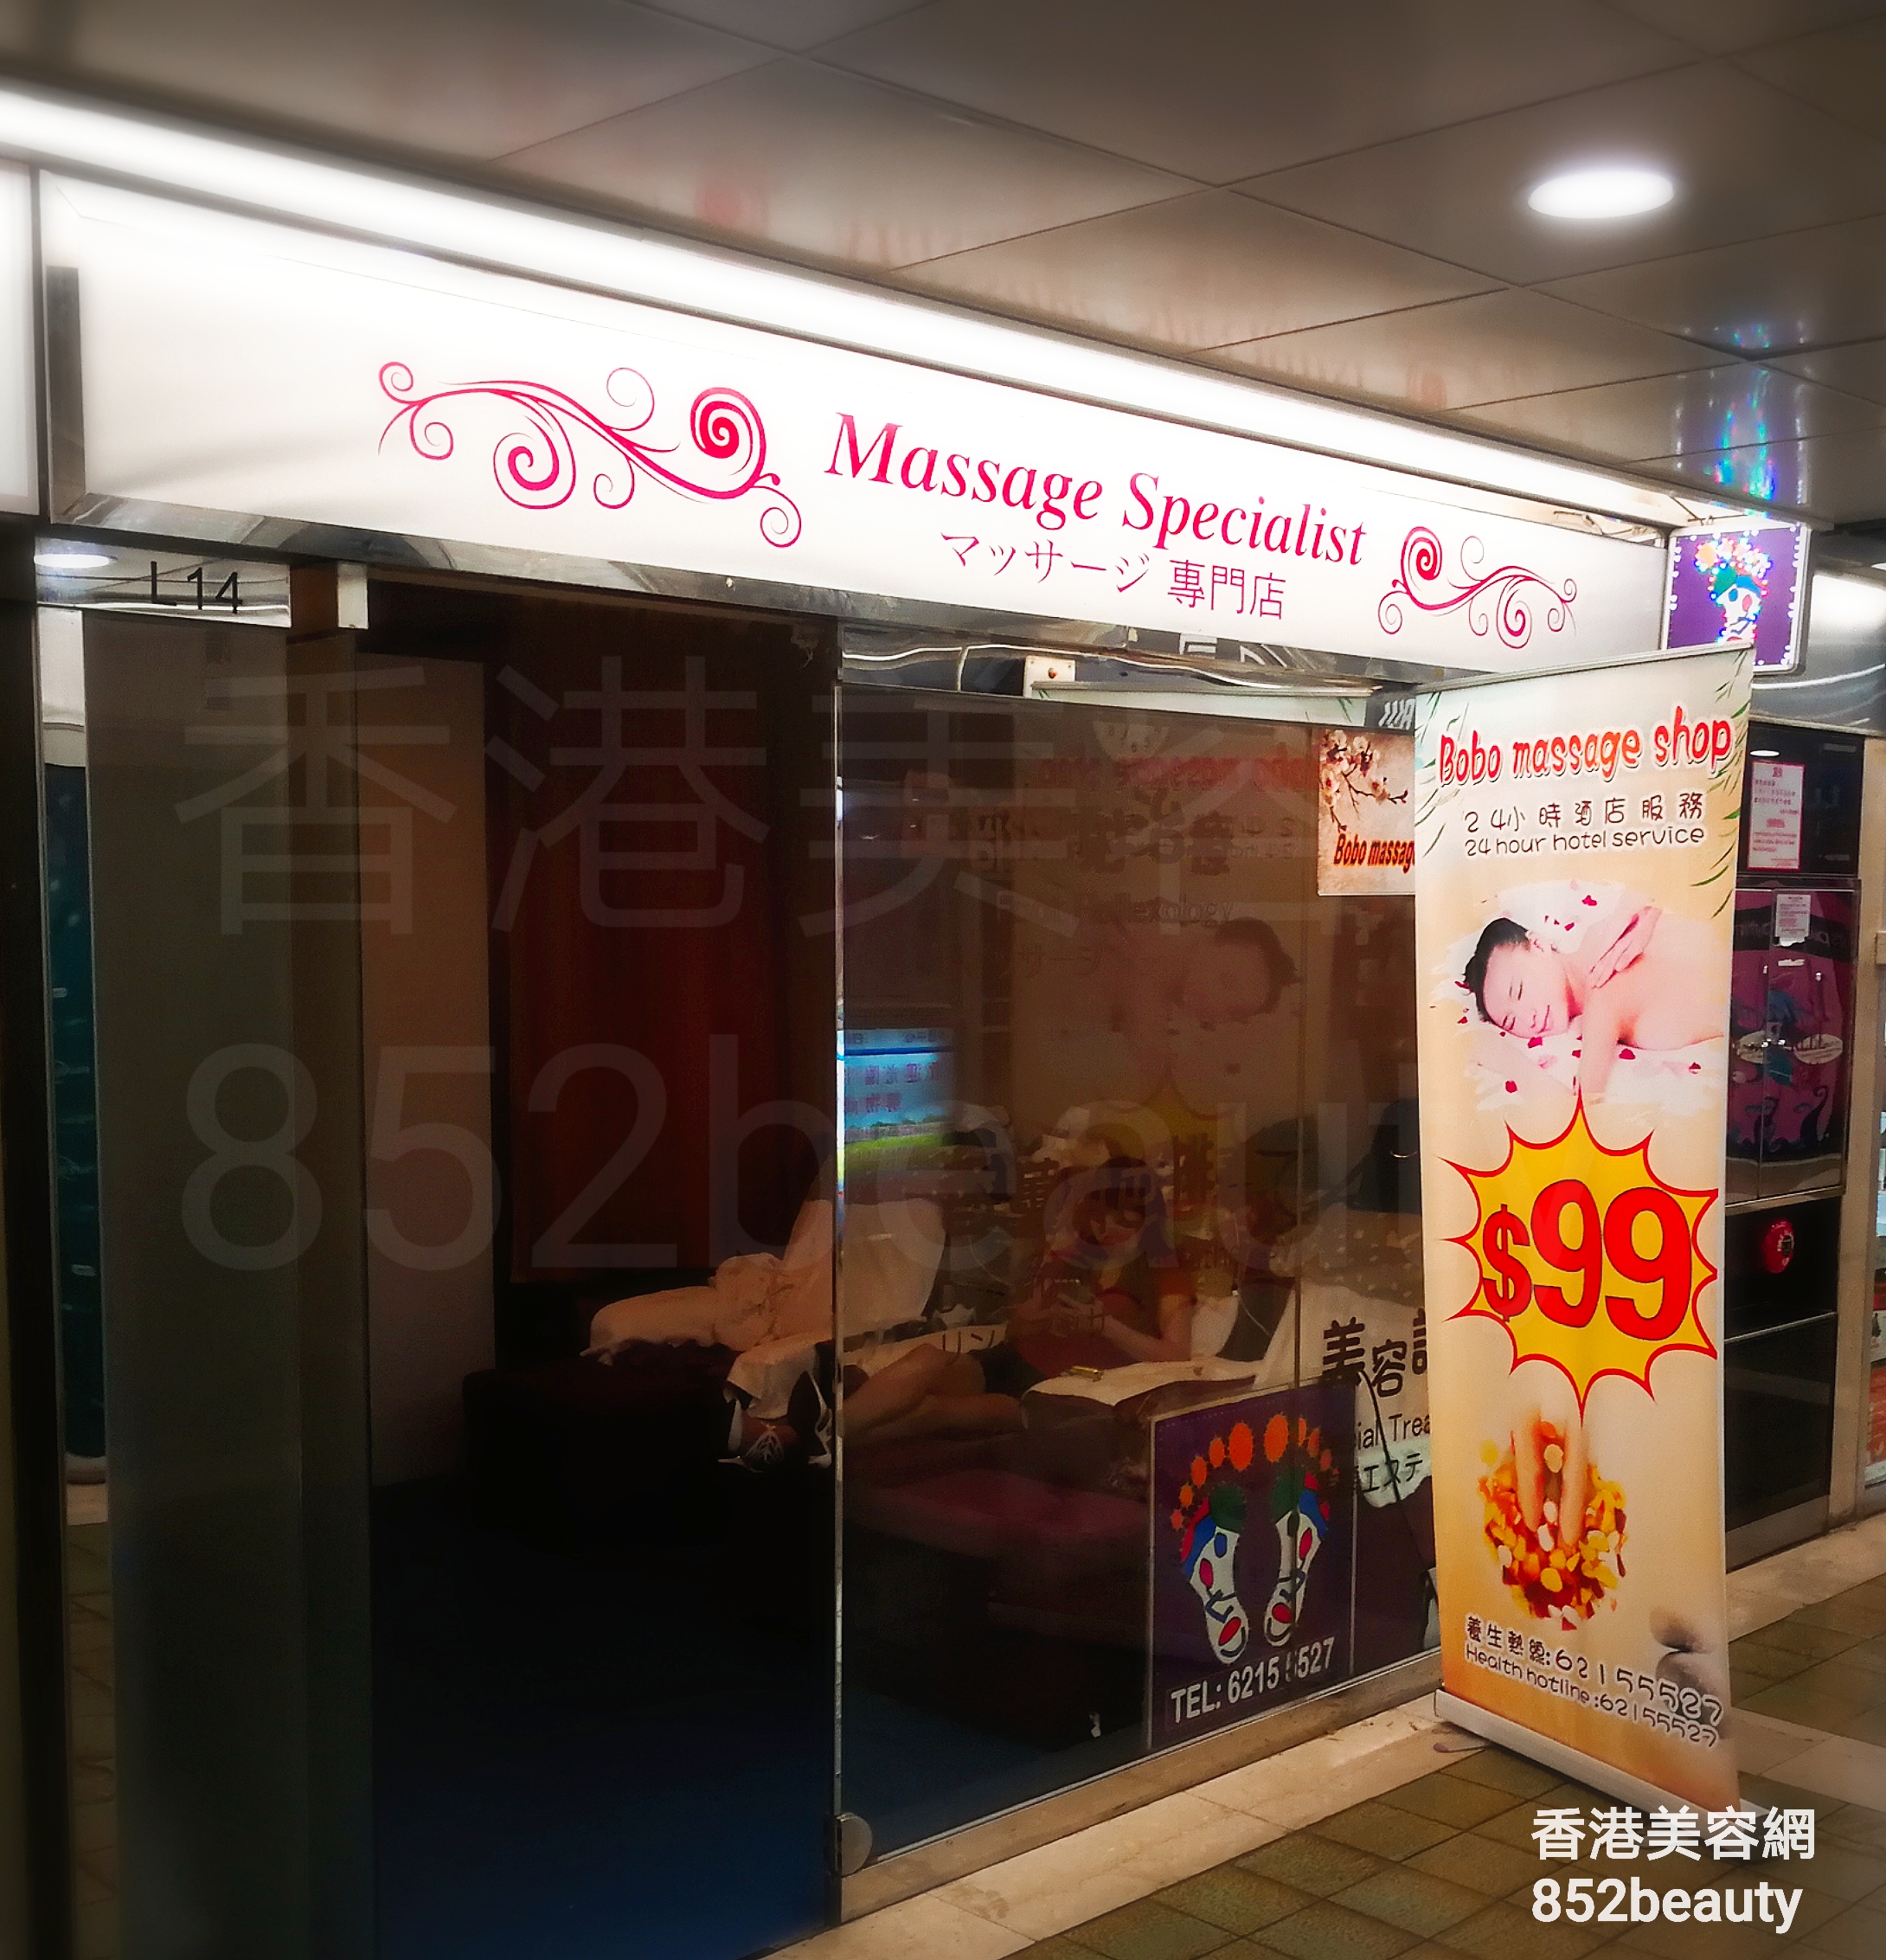 美容院: BoBo massage shop